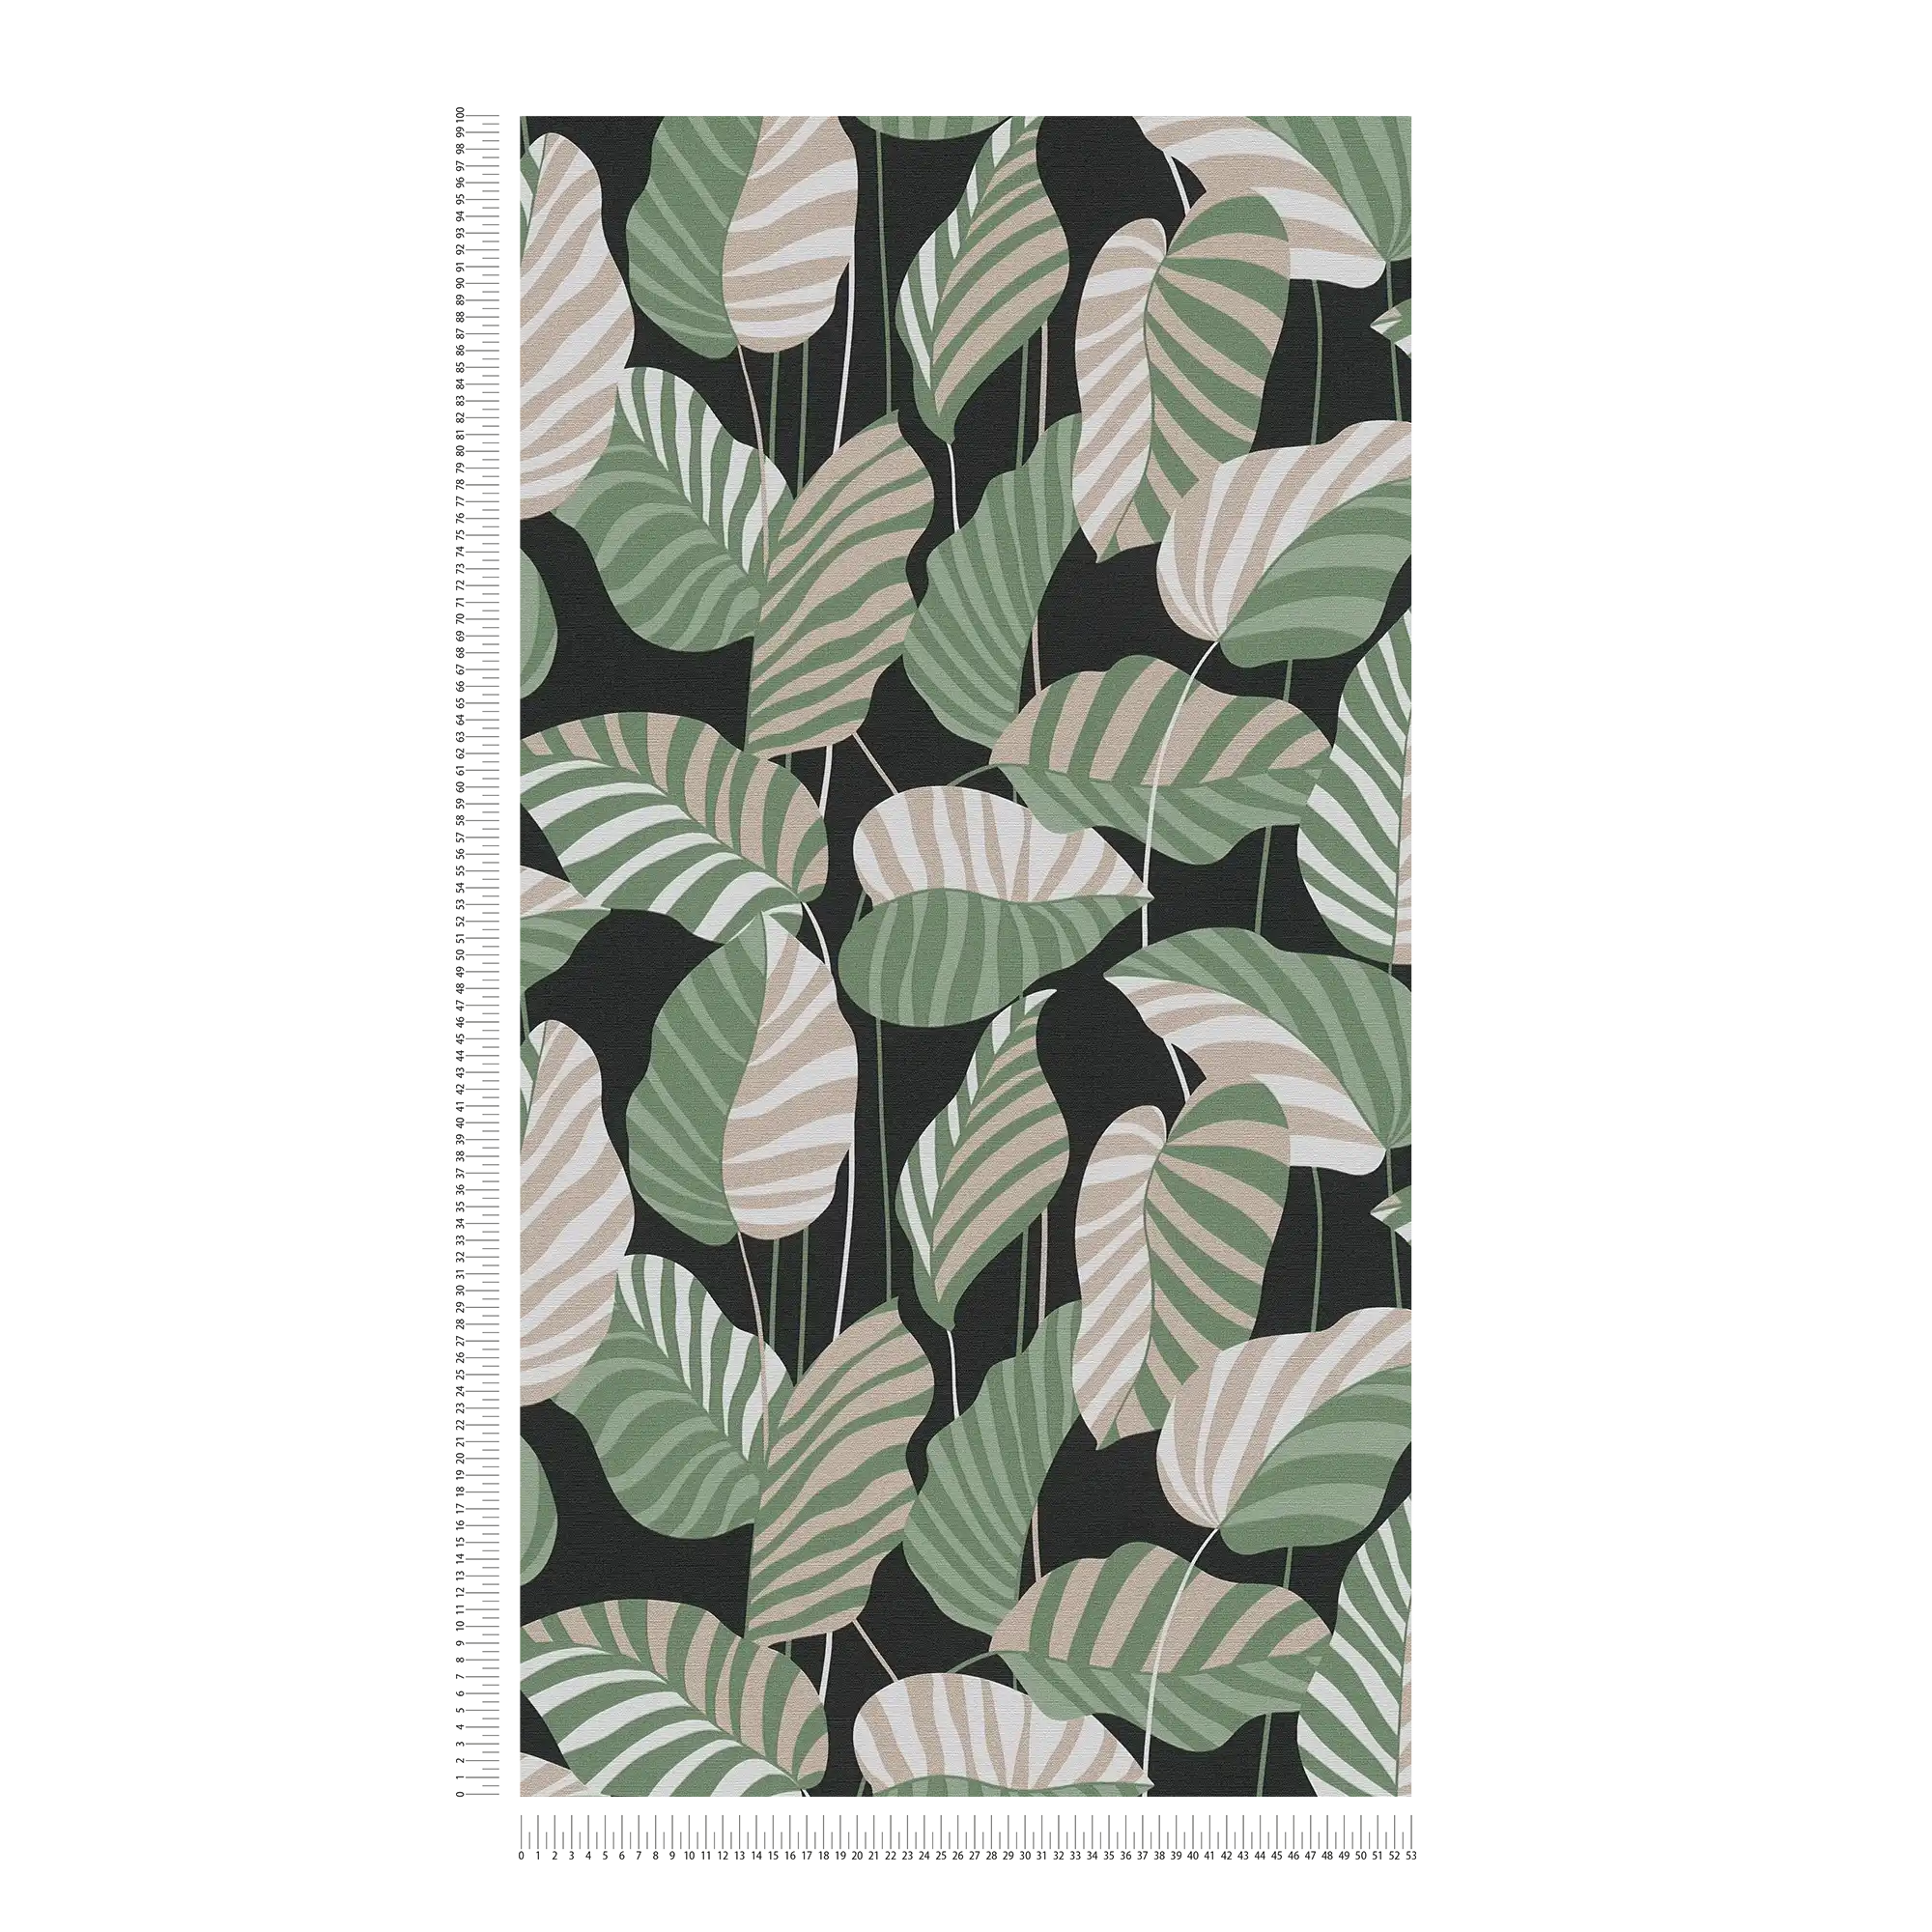             Vliestapete mit Palmblättern in leichtem Glanz – Schwarz, Grün, Gold
        